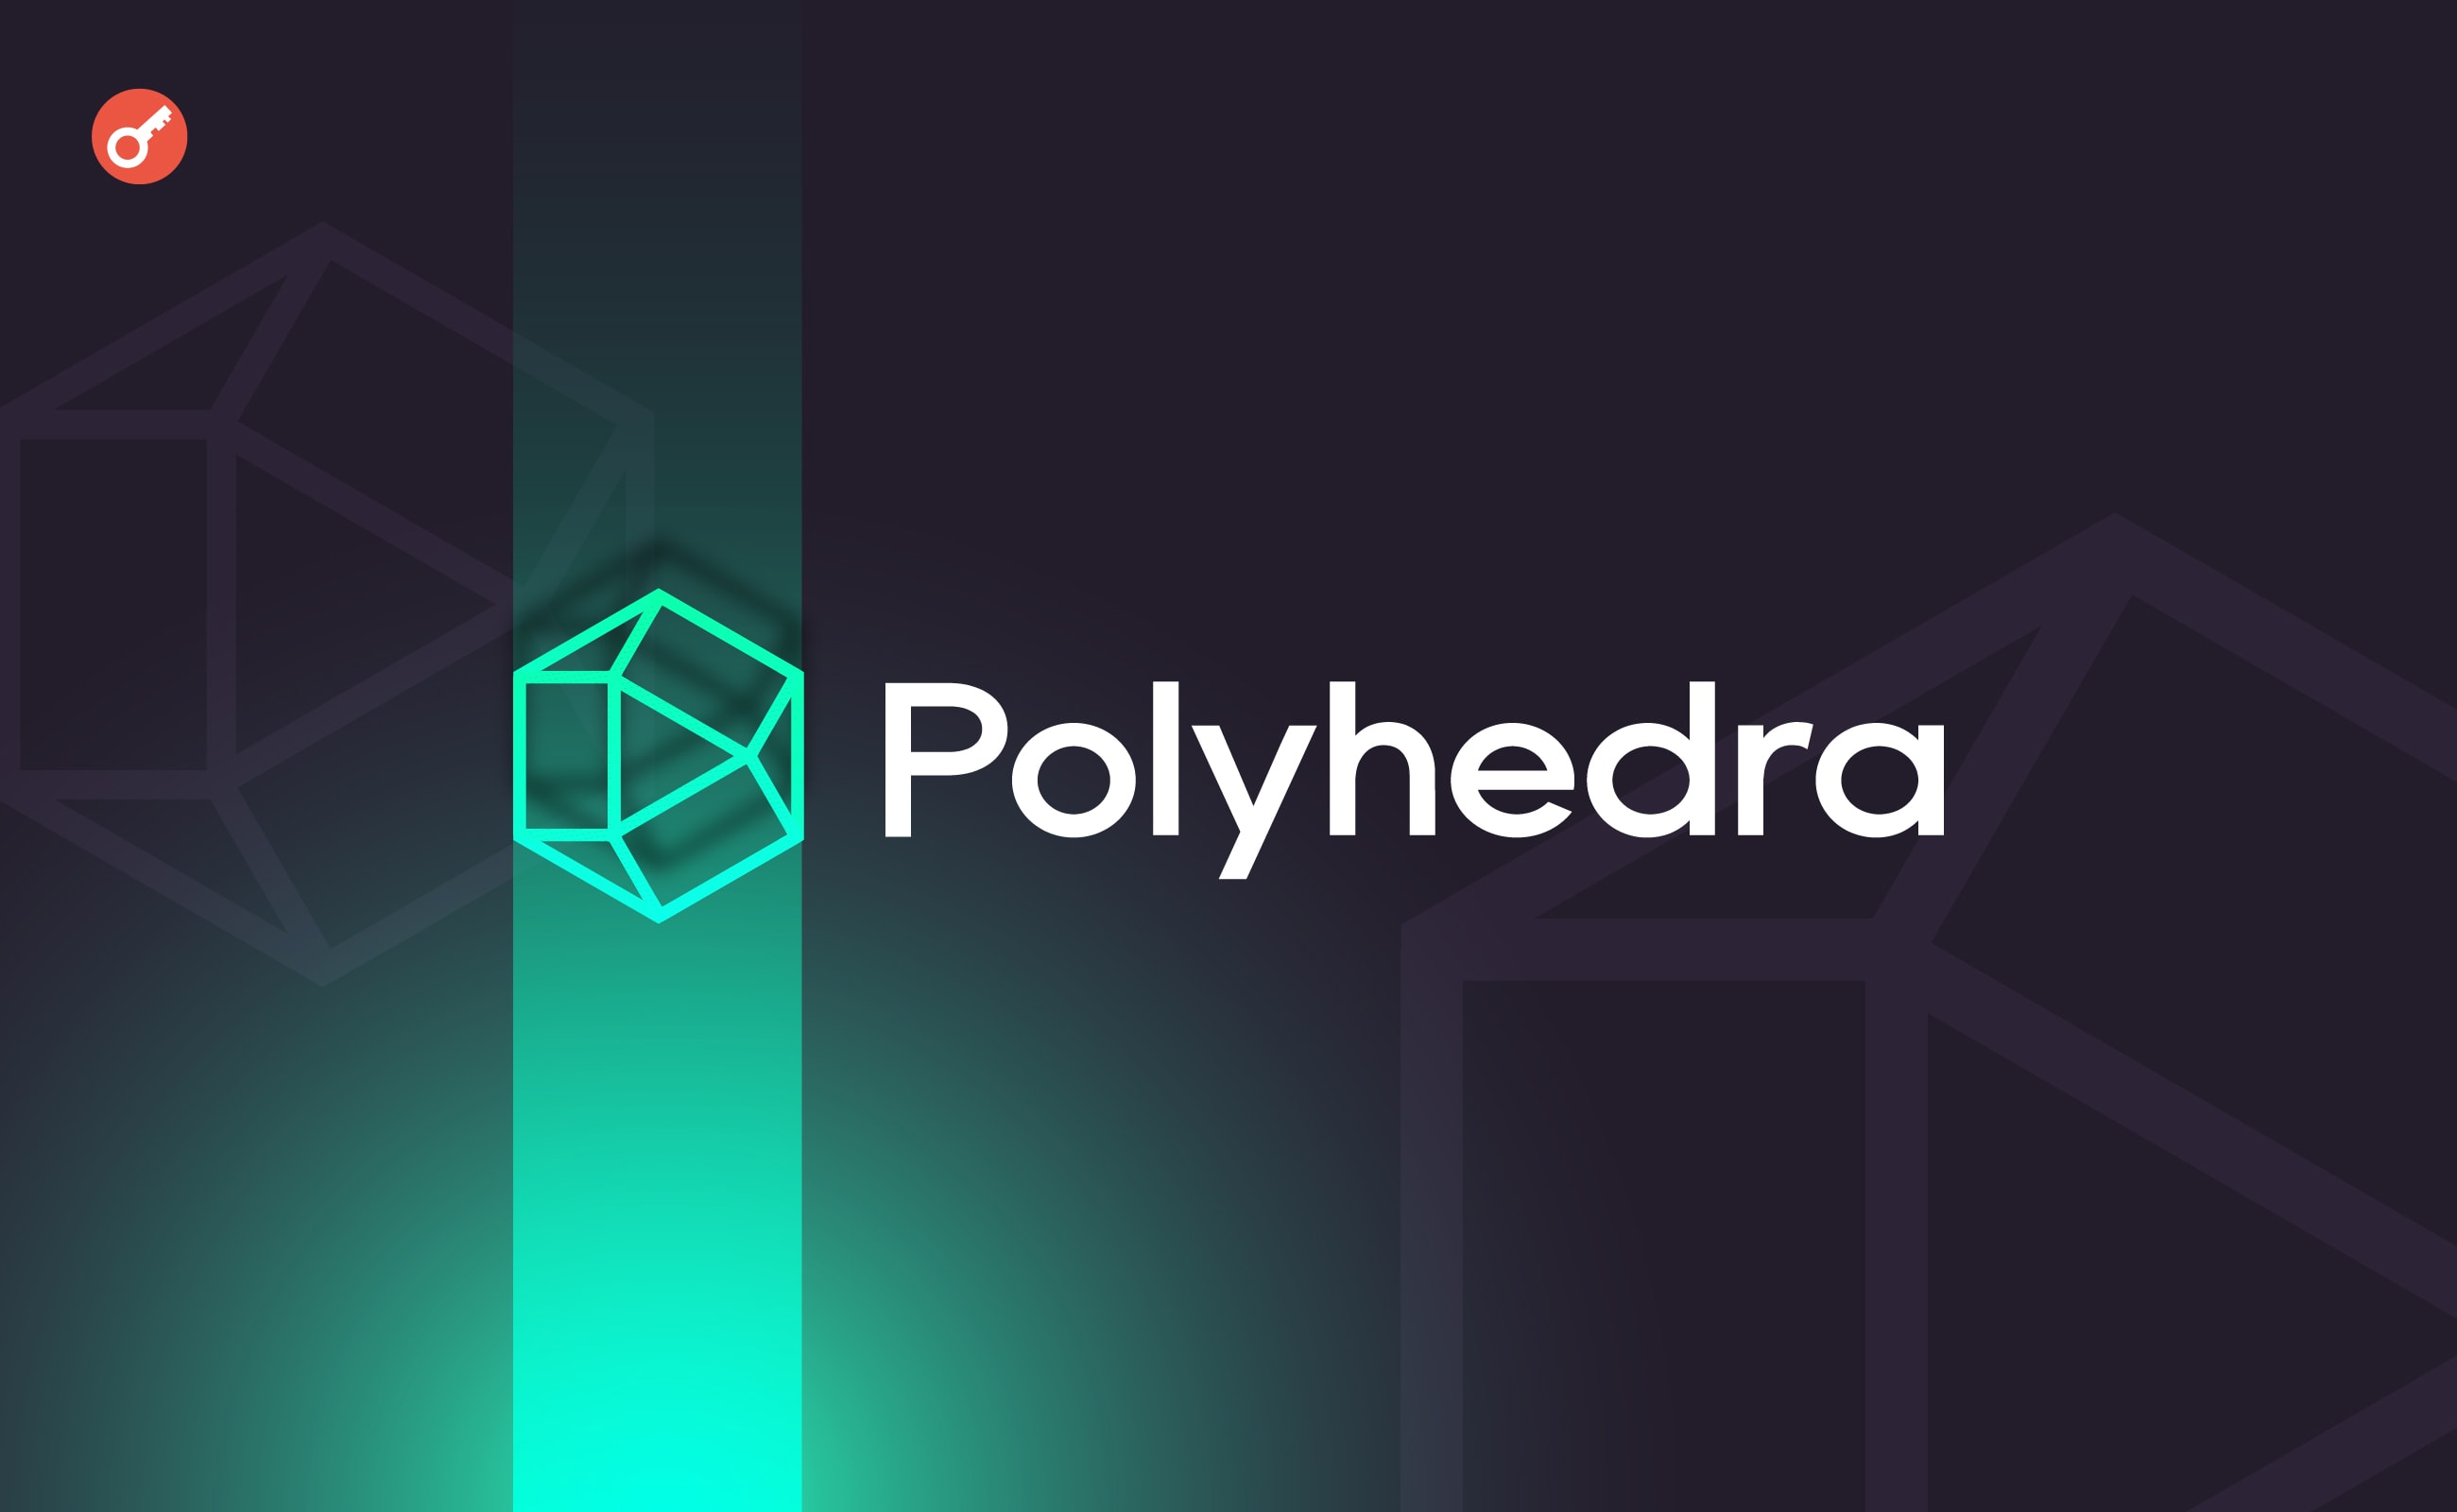 Команда Polyhedra Network звинуватила zkSync у крадіжці тікера токена. Головний колаж новини.